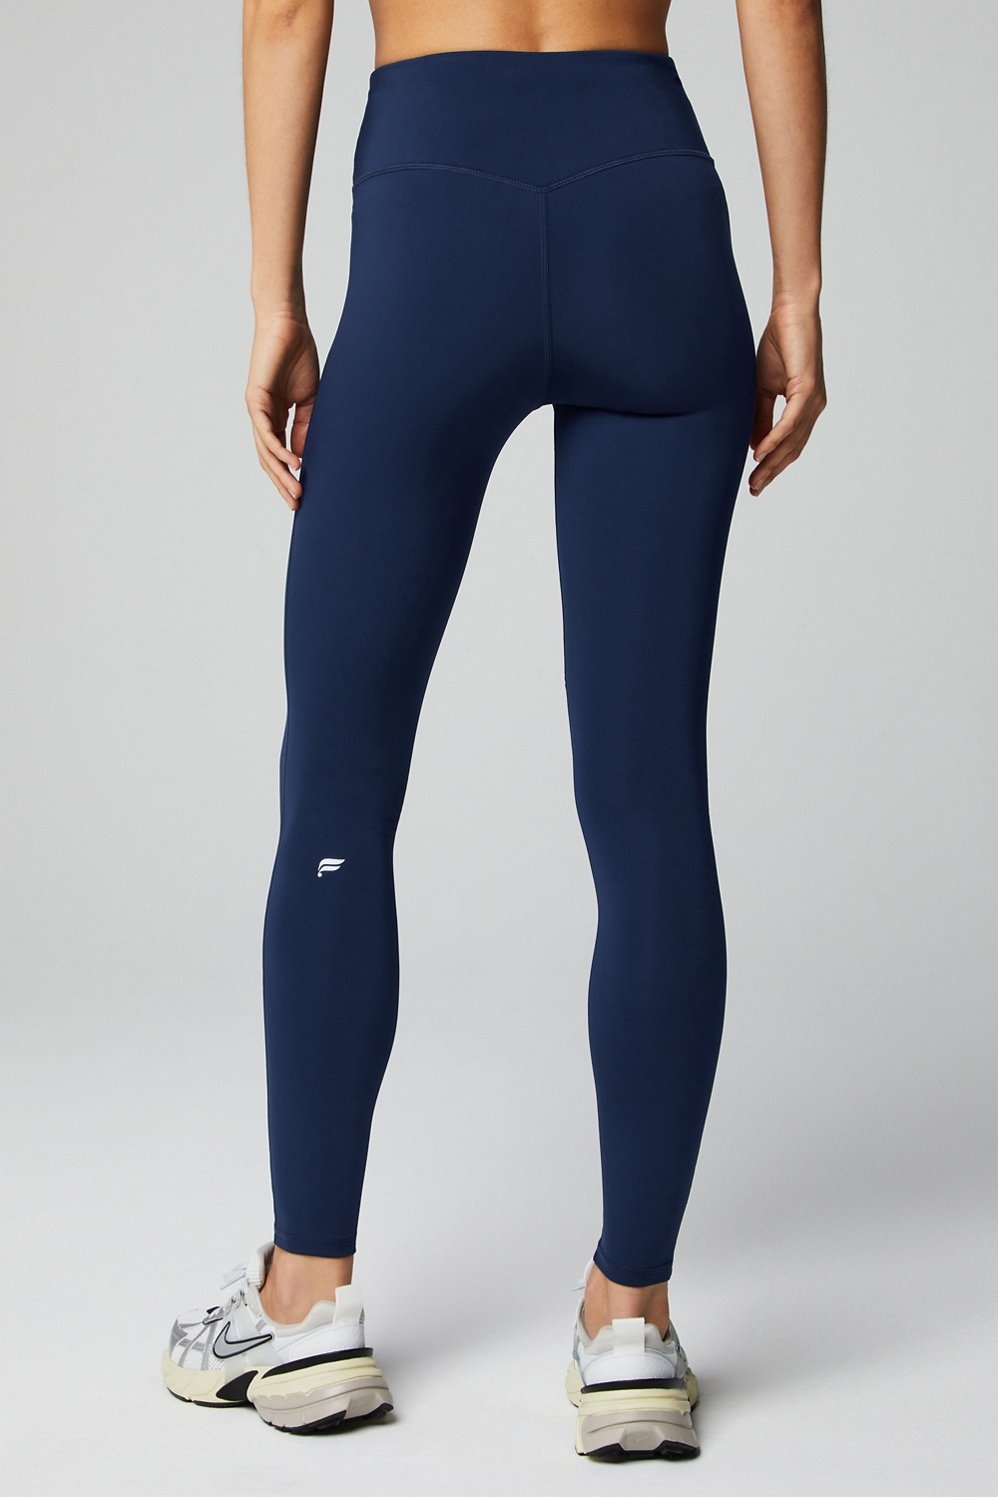 Nike Navy Blue Leggings: Shop Navy Blue Leggings - Macy's